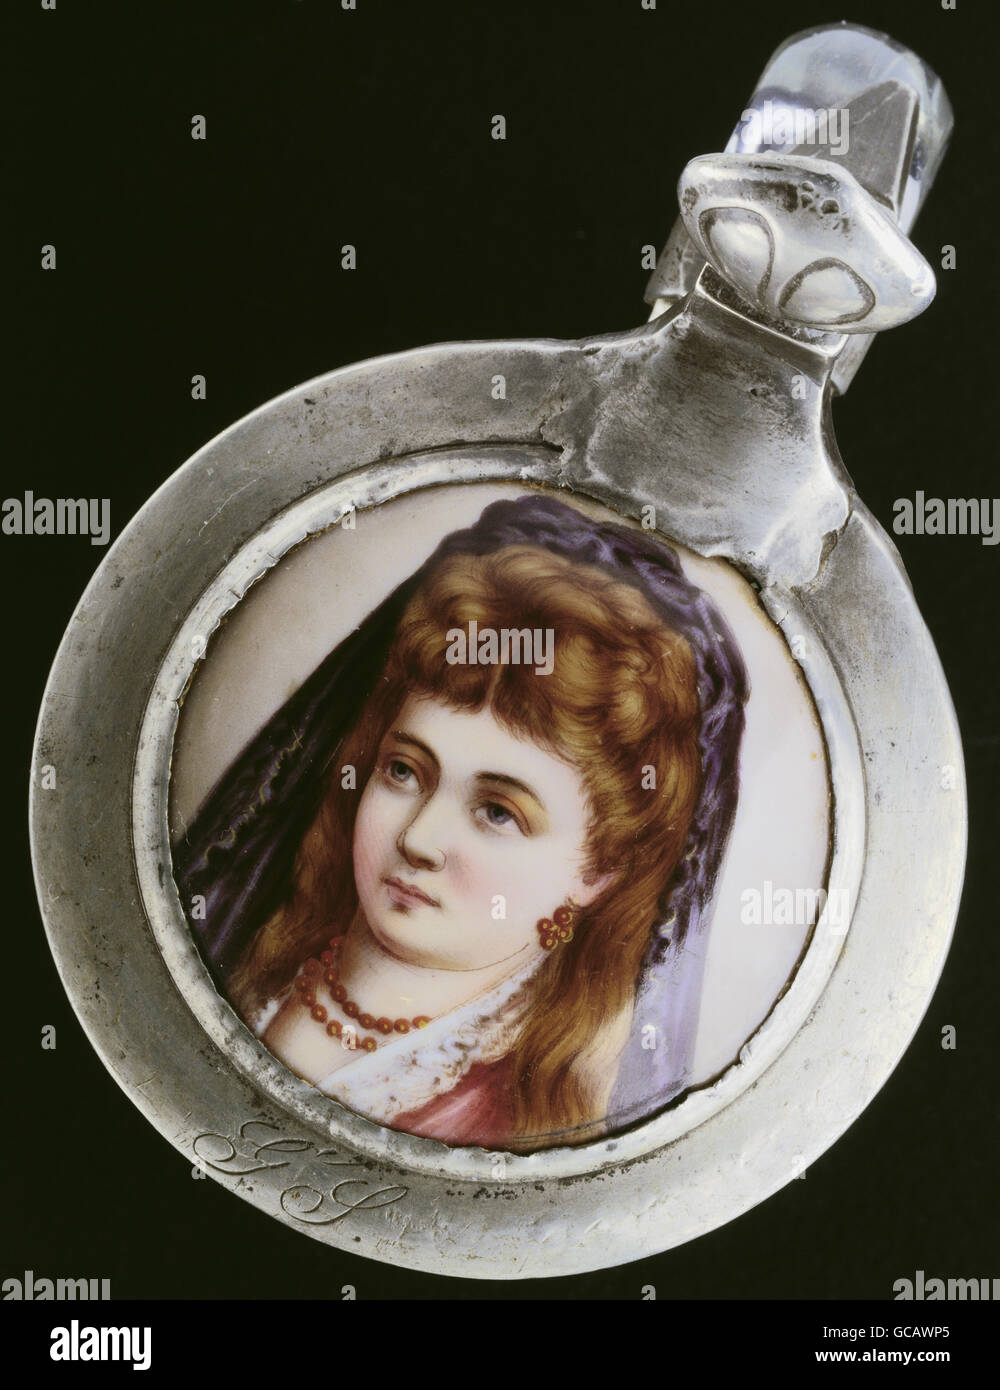 Bildende Kunst, Malerei, malte Krug Bierdeckel, Porzellanmalerei, Portrait einer Dame, Deutschland, 2. Hälfte 19. Jahrhundert Stockfoto